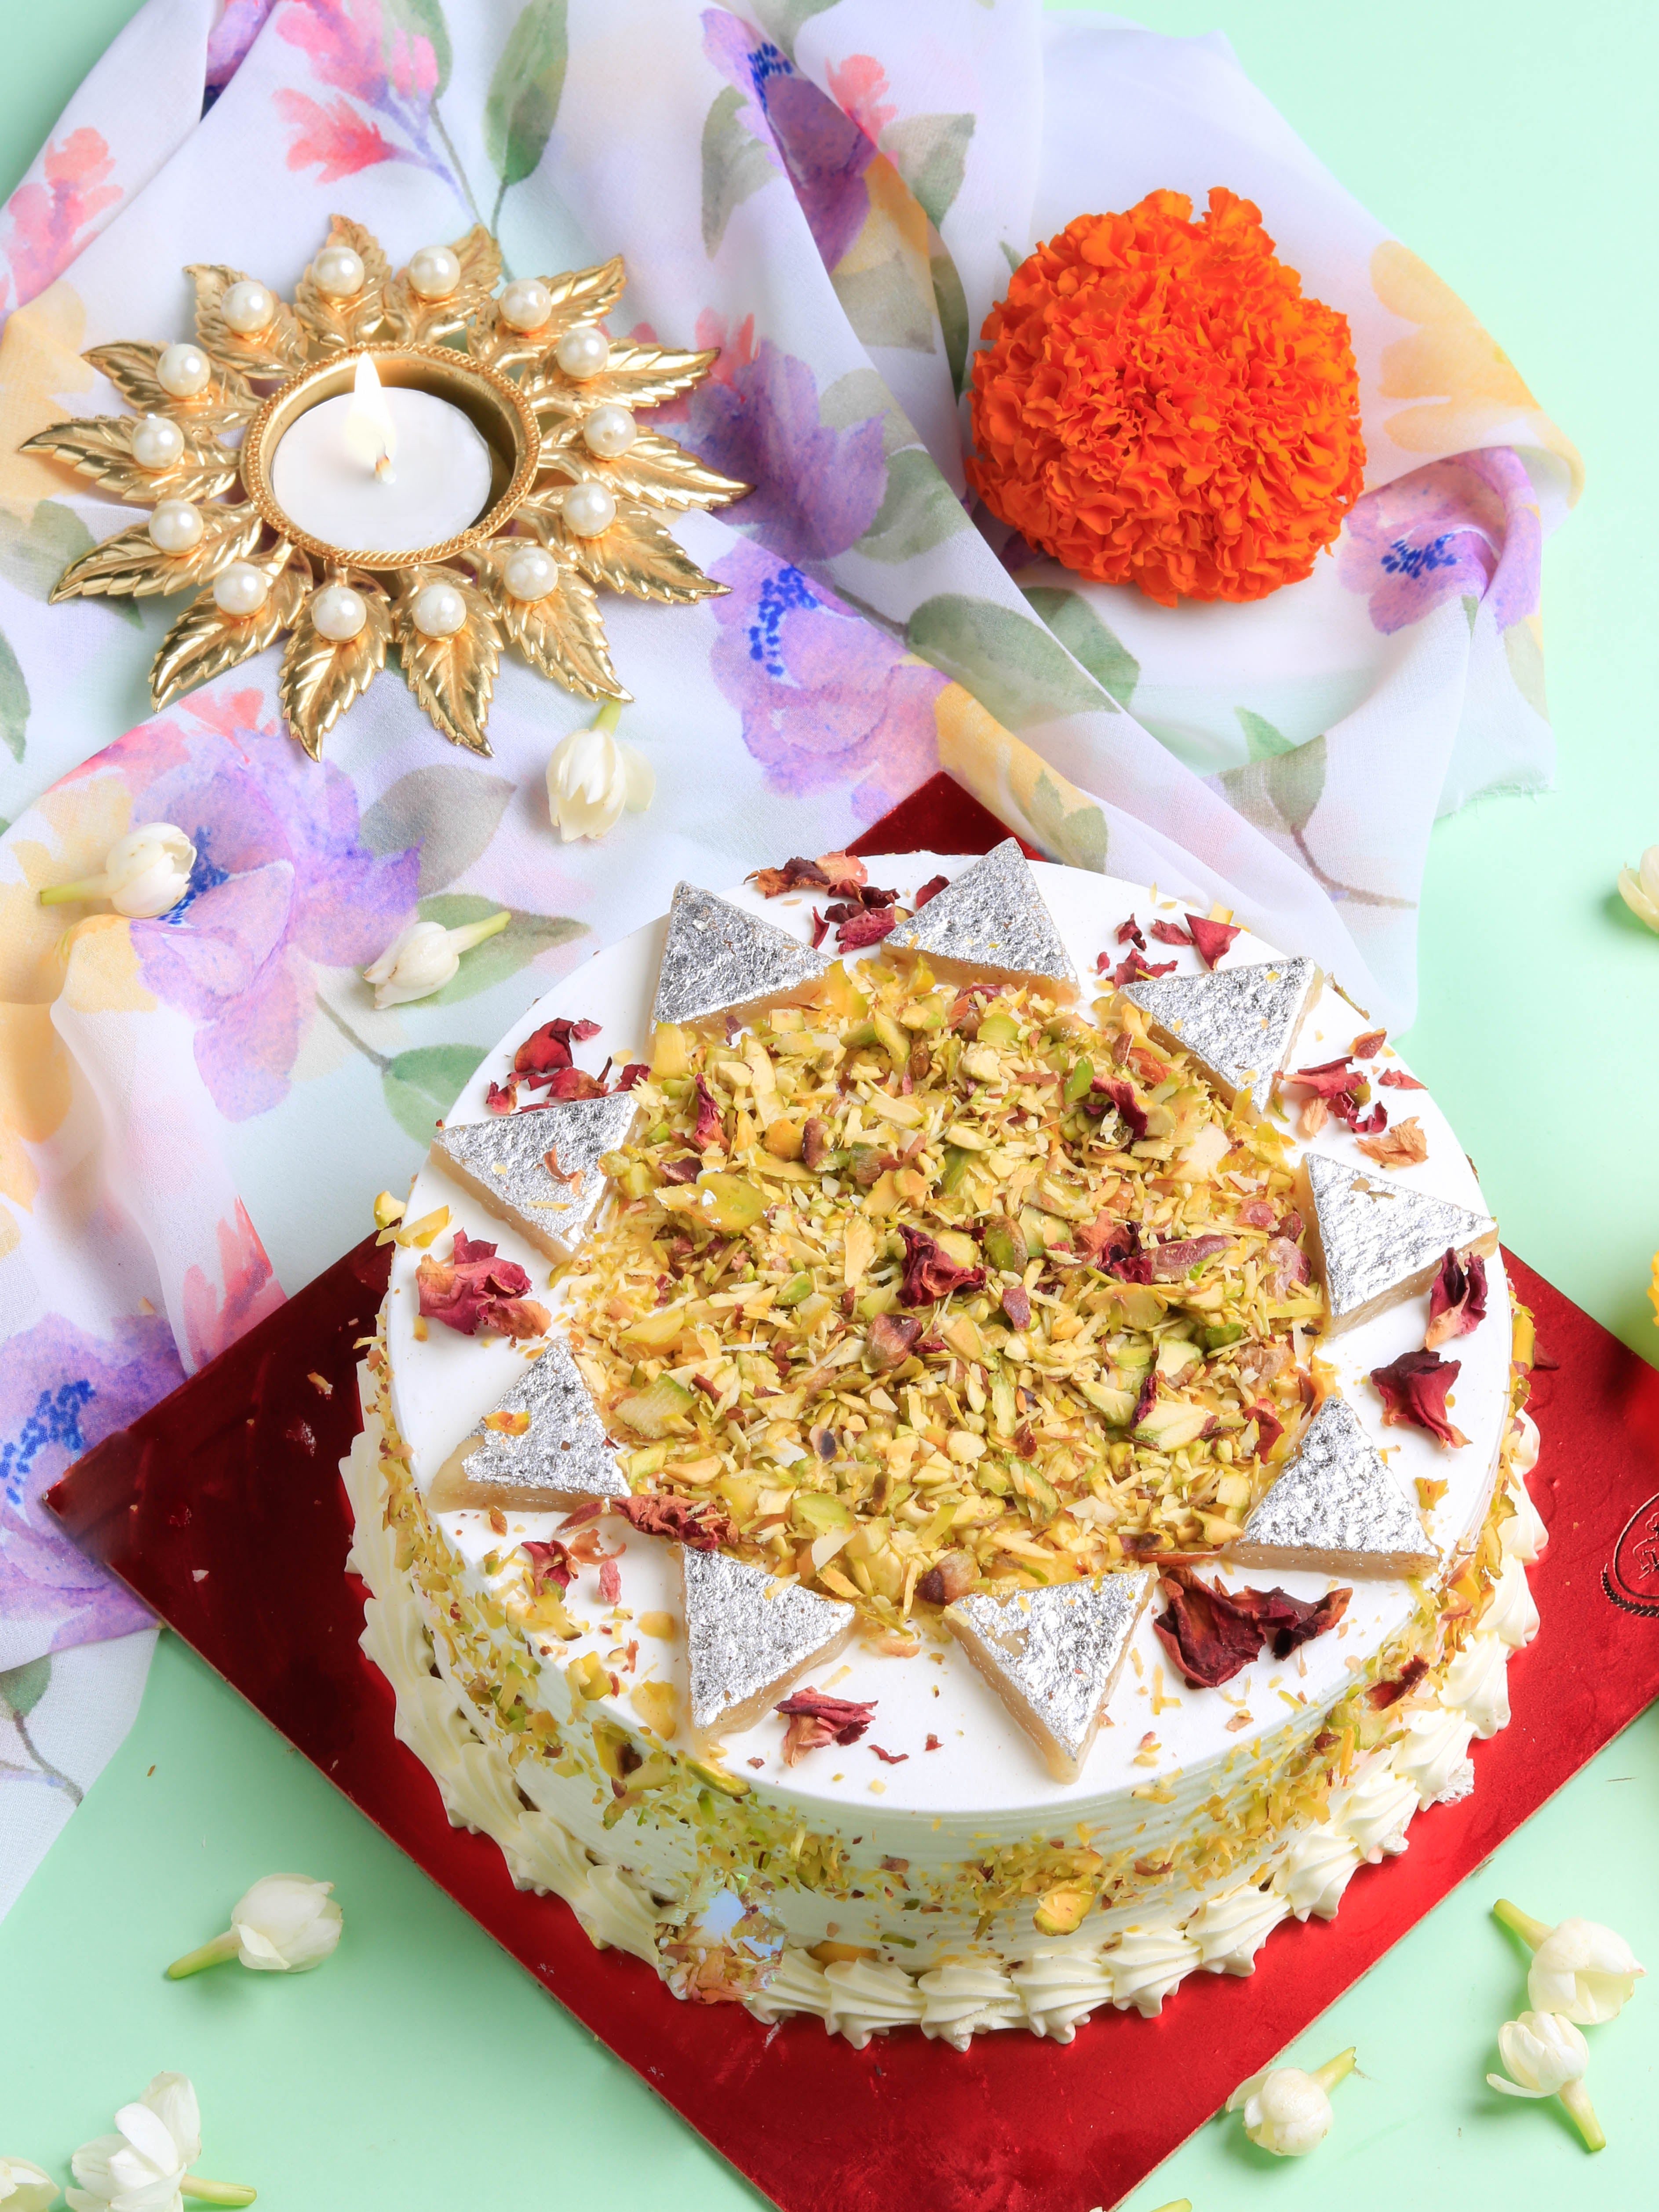 Utsavi's Cakes - Kaju Katli Cake | Facebook